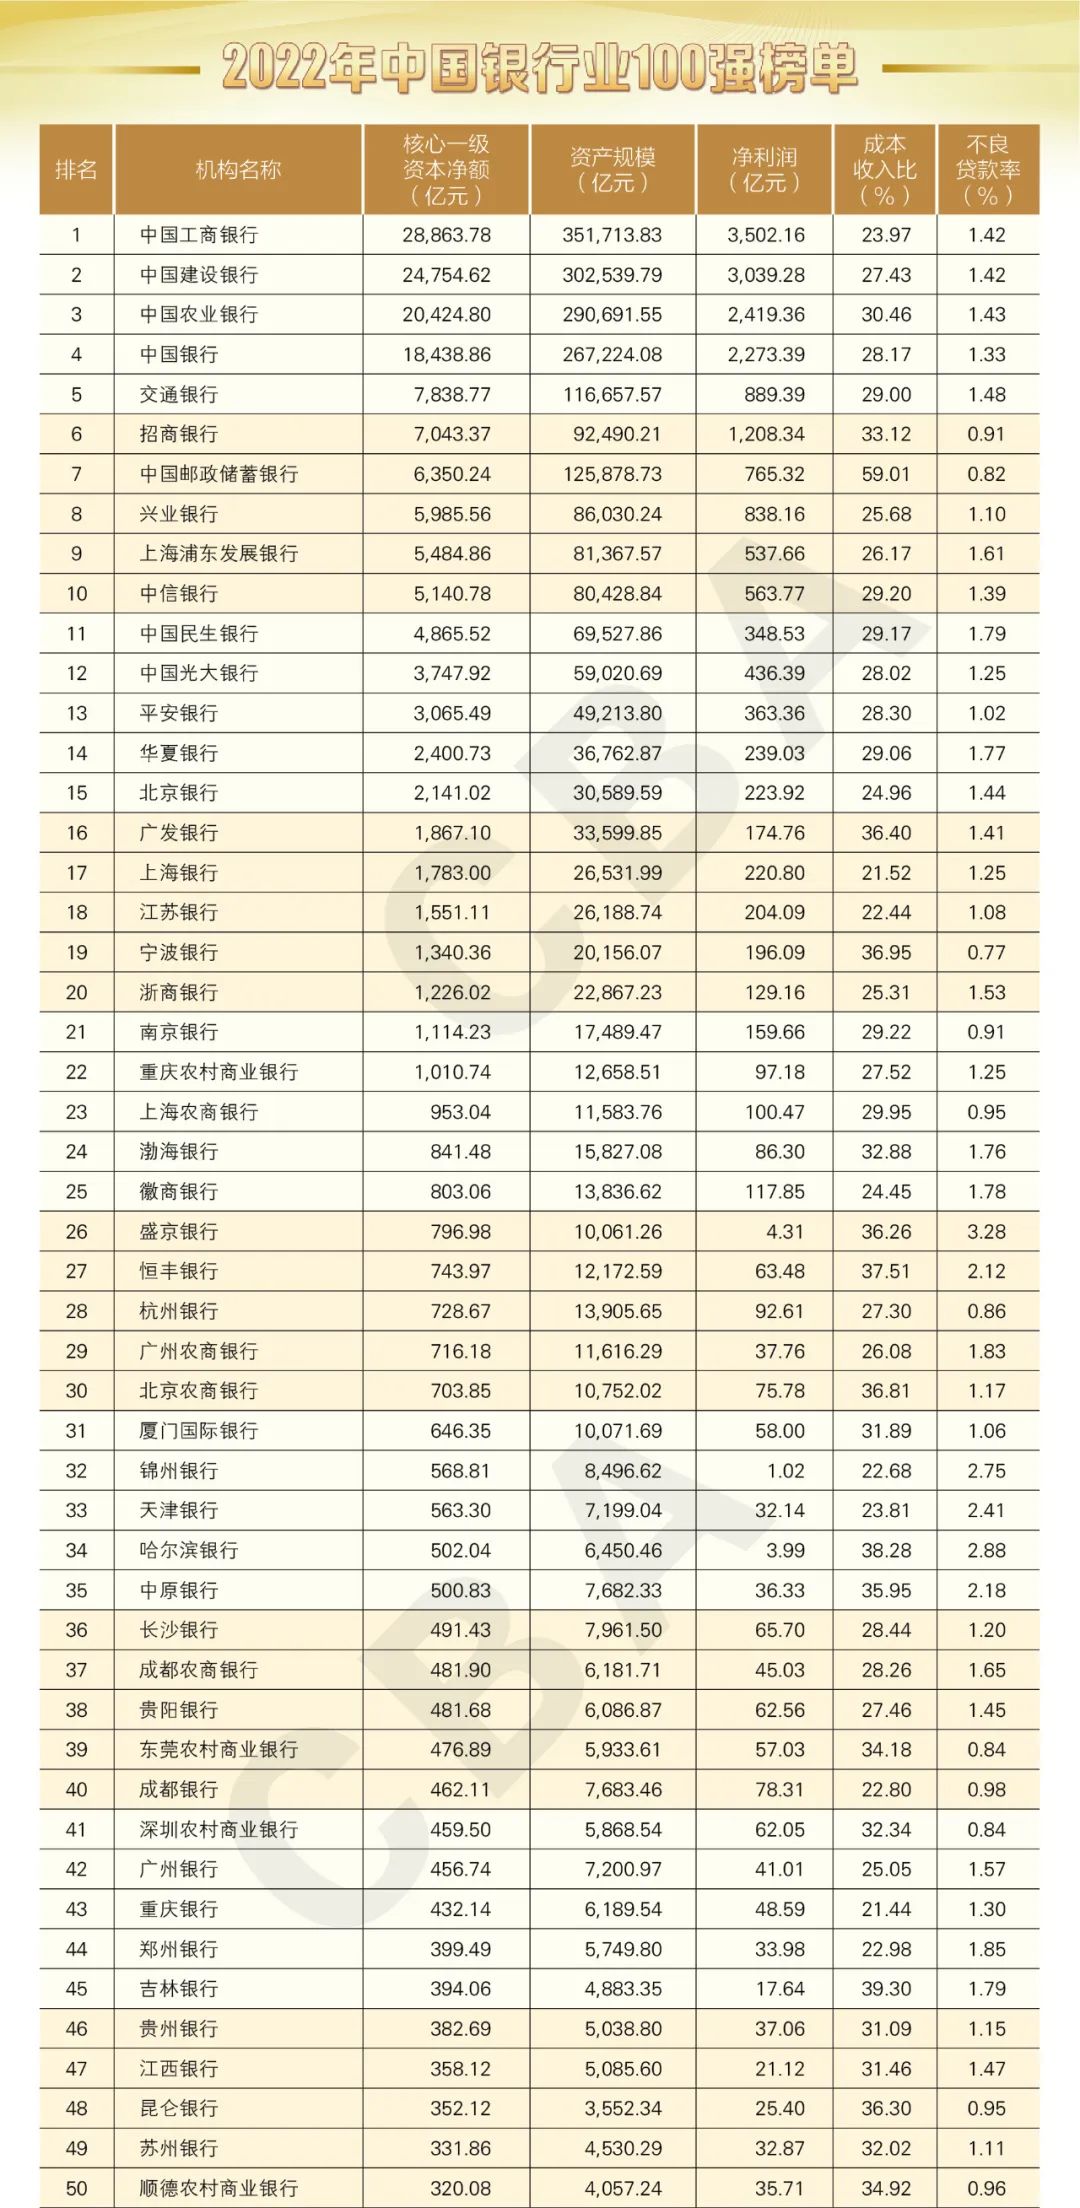 022年中国银行业100强榜单"